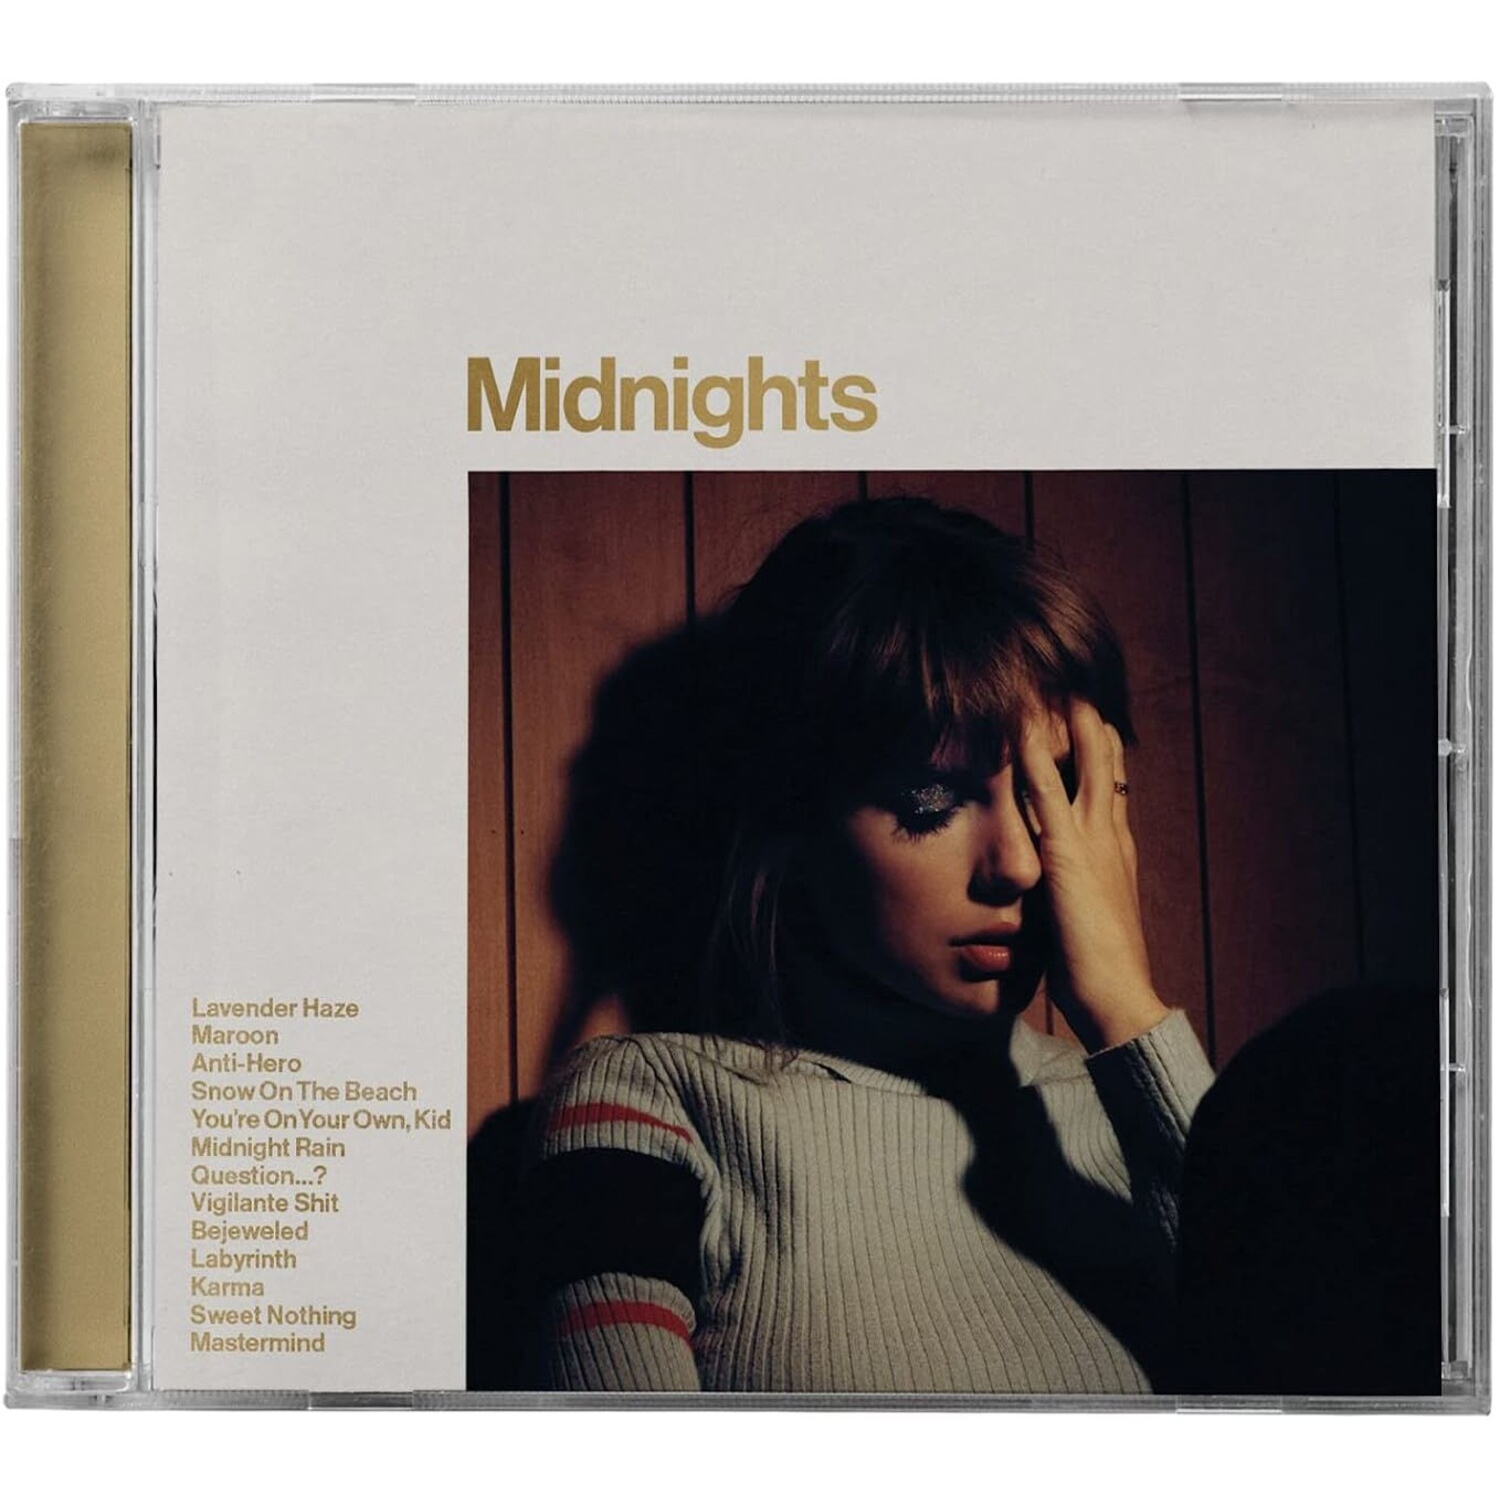 Taylor Swift - Midnights [Mahogany Edition]